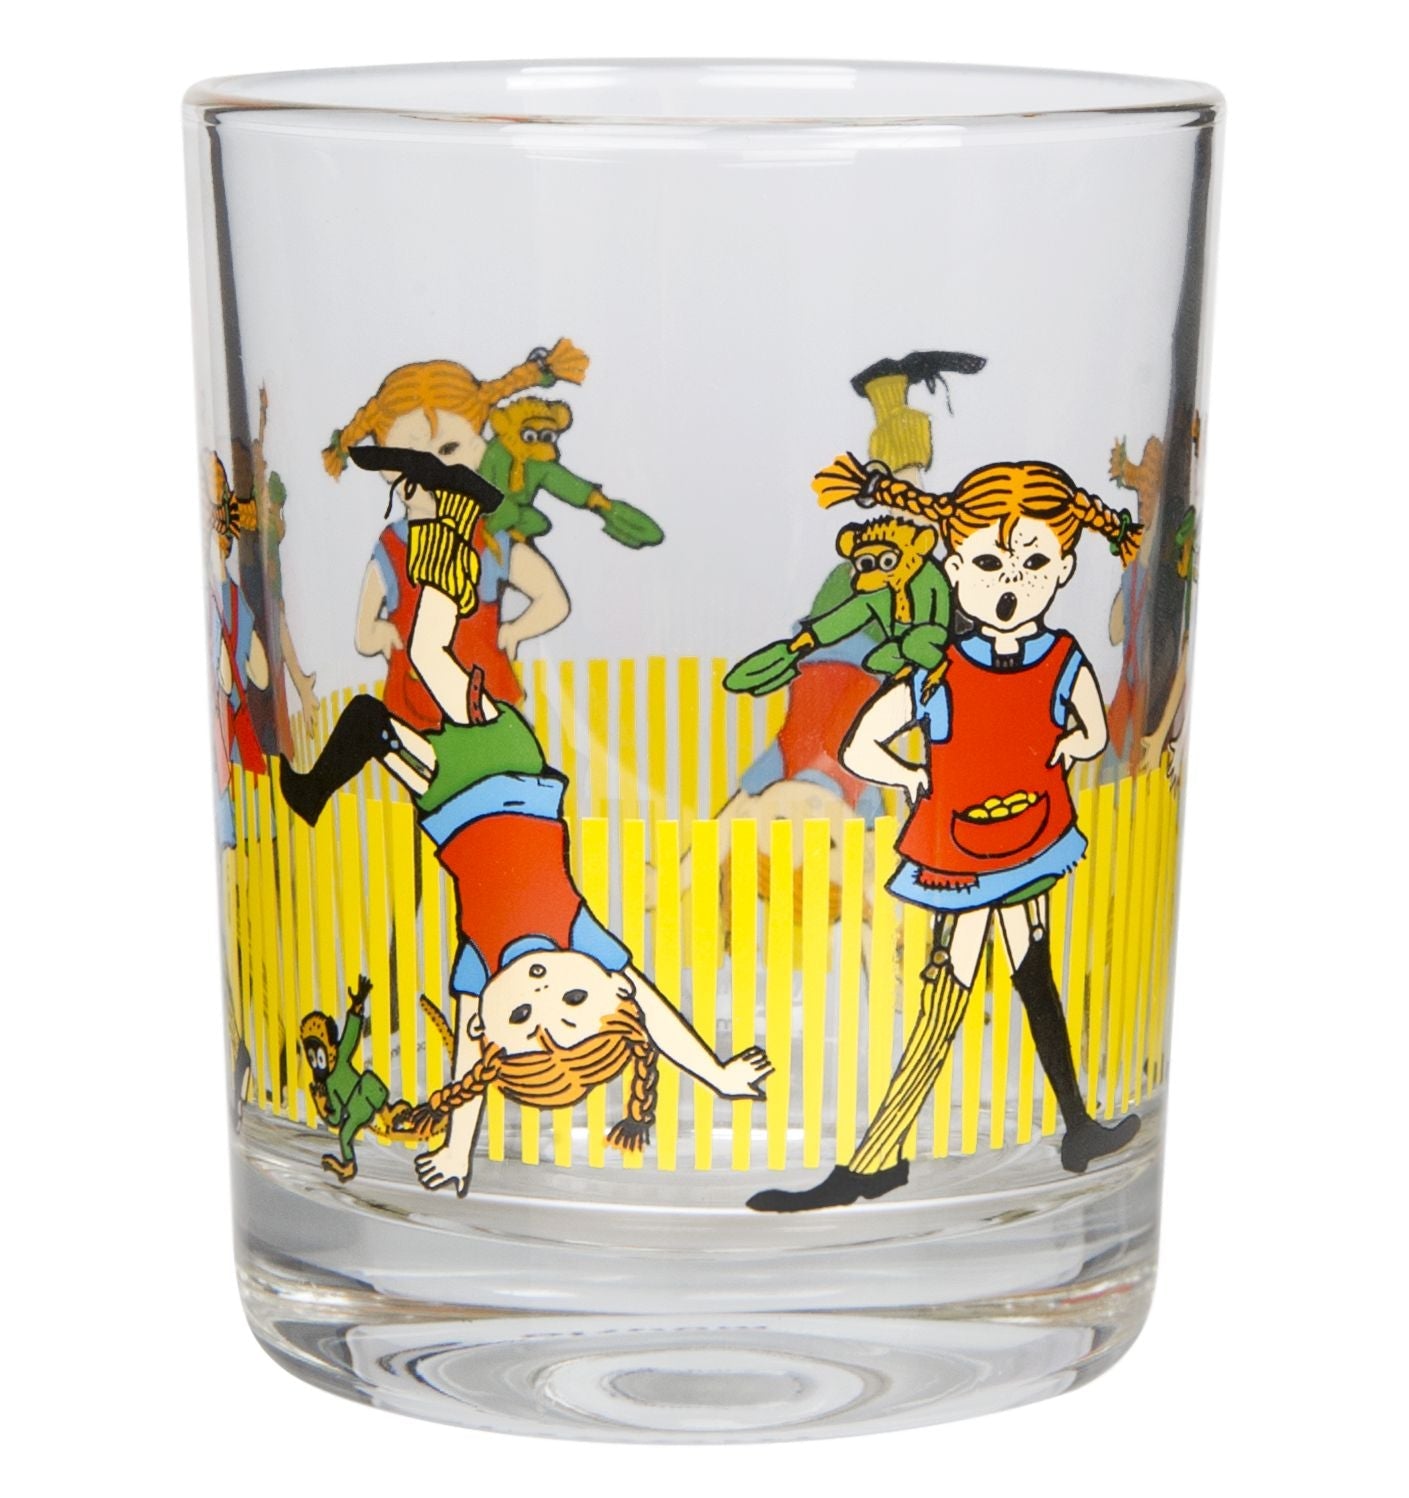 Muurla Pippi Longstocking drinkglas, Pippi Longstocking